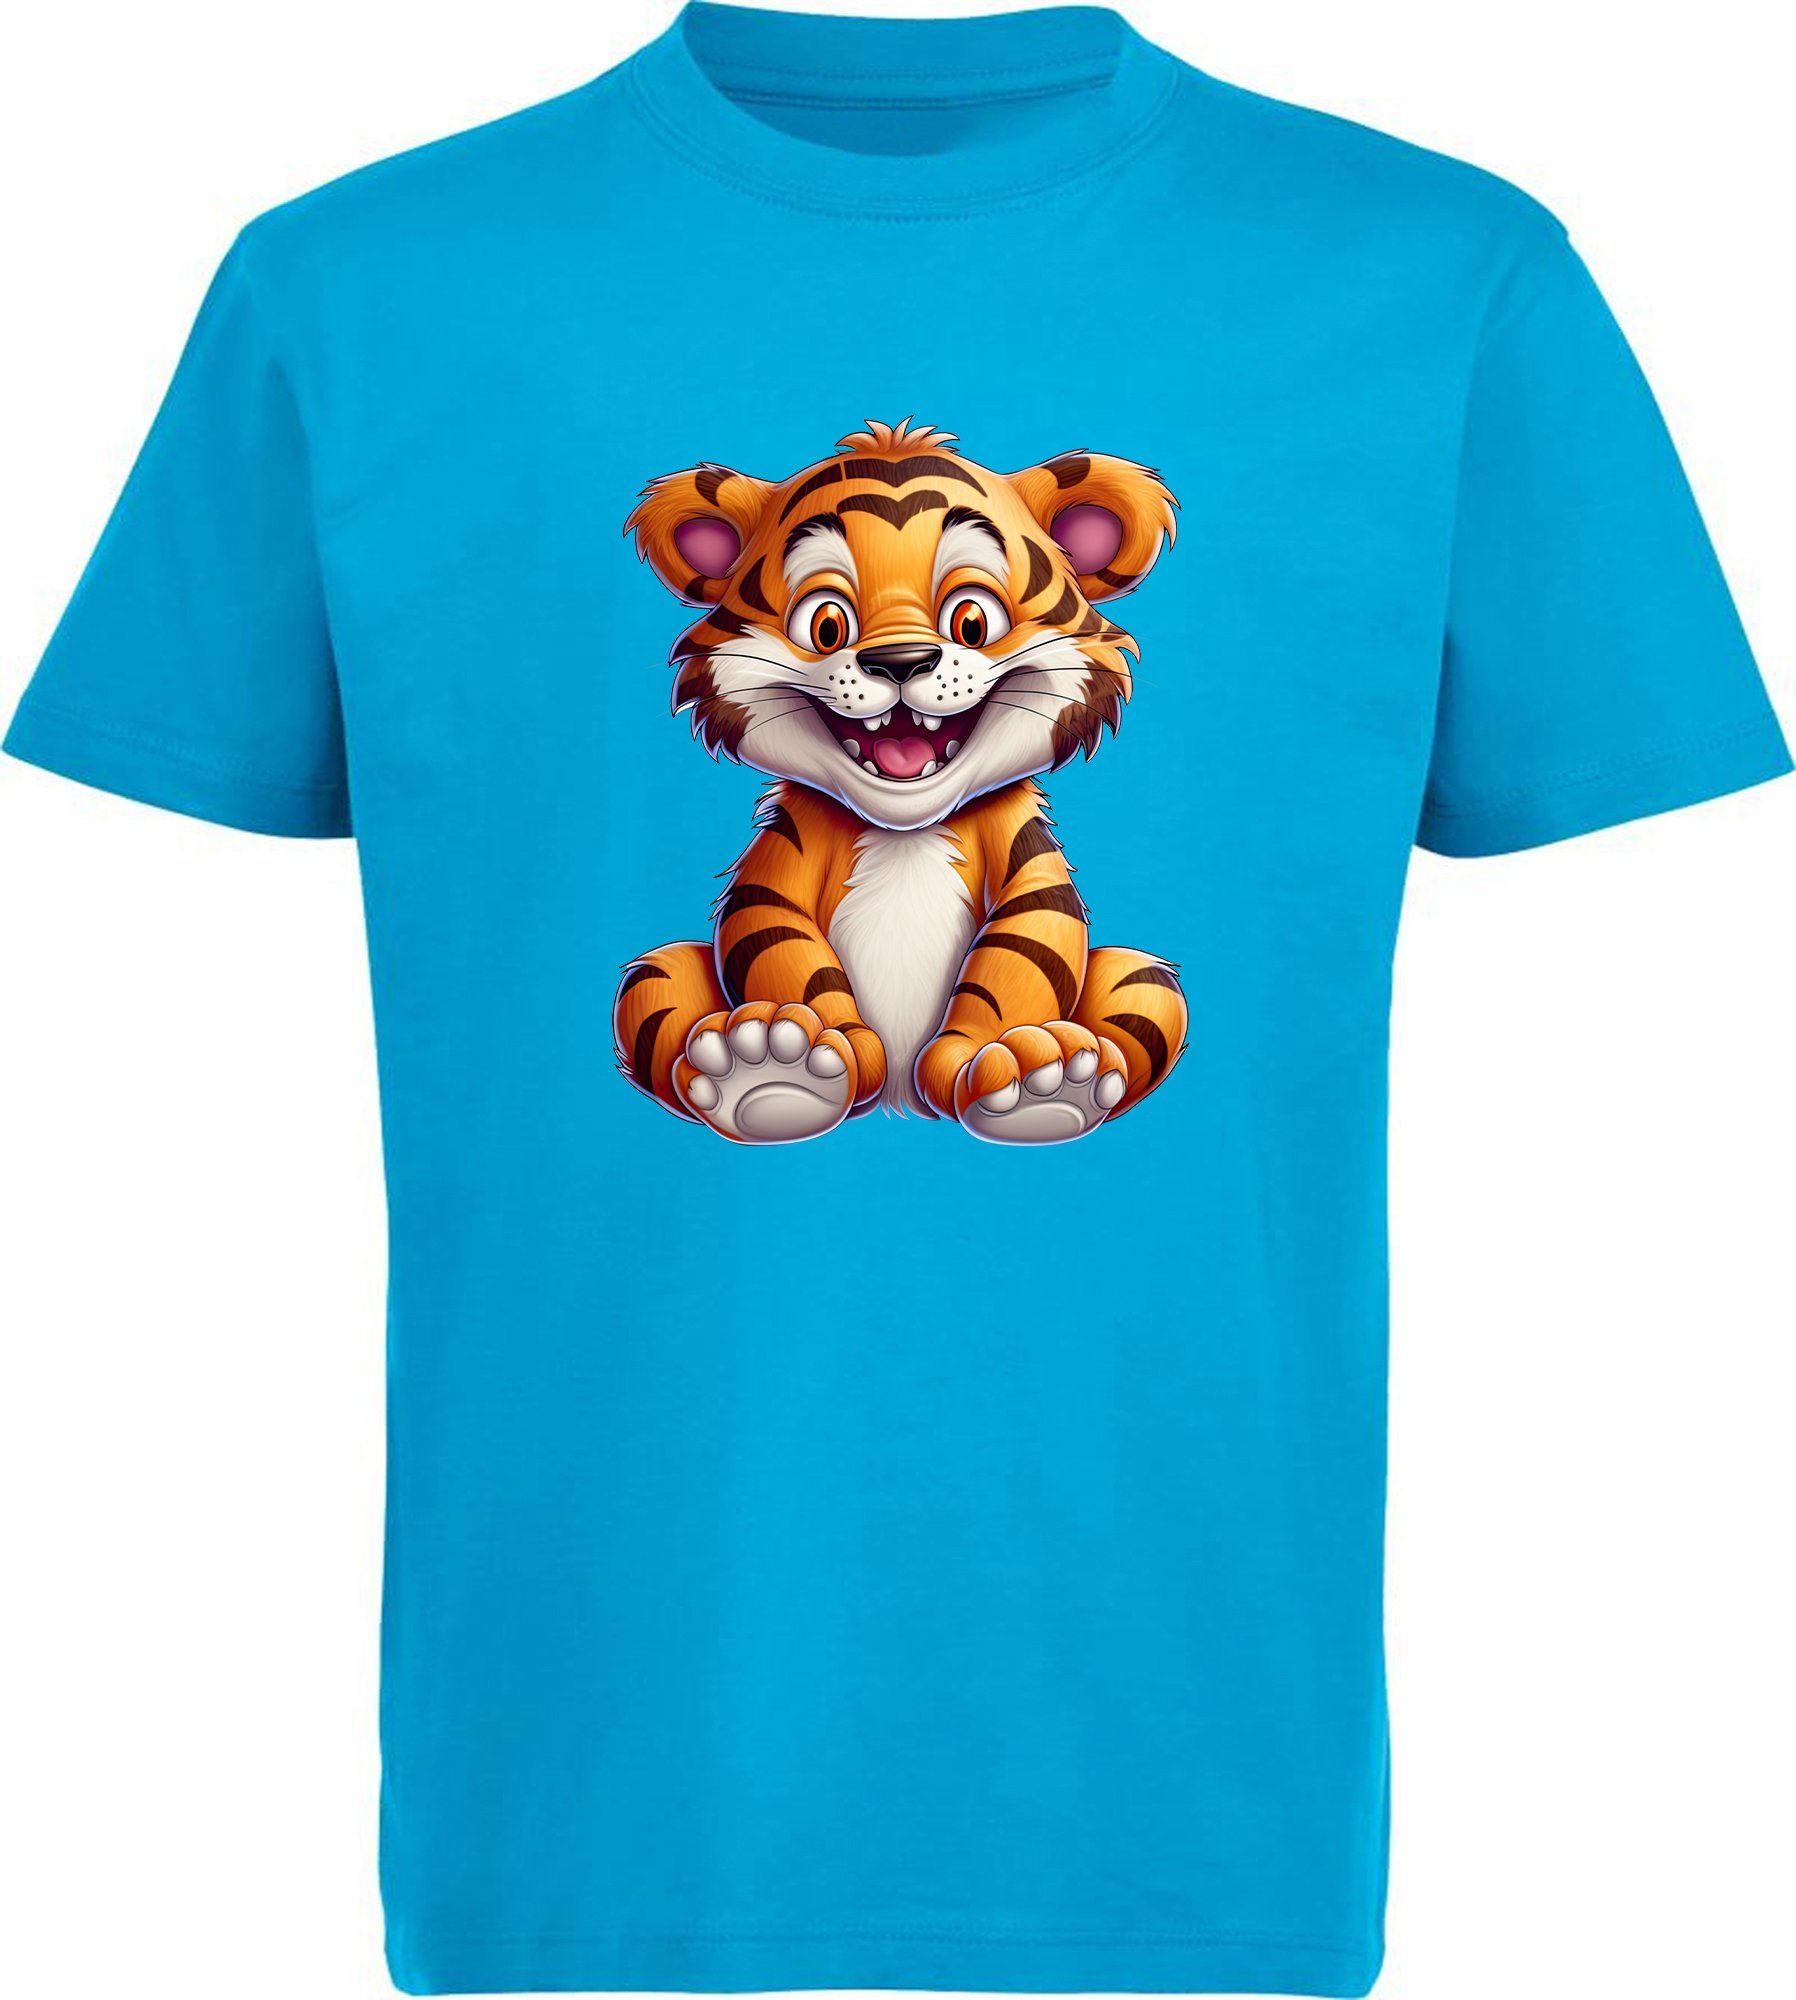 MyDesign24 T-Shirt Kinder i278 Shirt Wildtier Baby bedruckt Print Tiger aqua blau Aufdruck, mit - Baumwollshirt